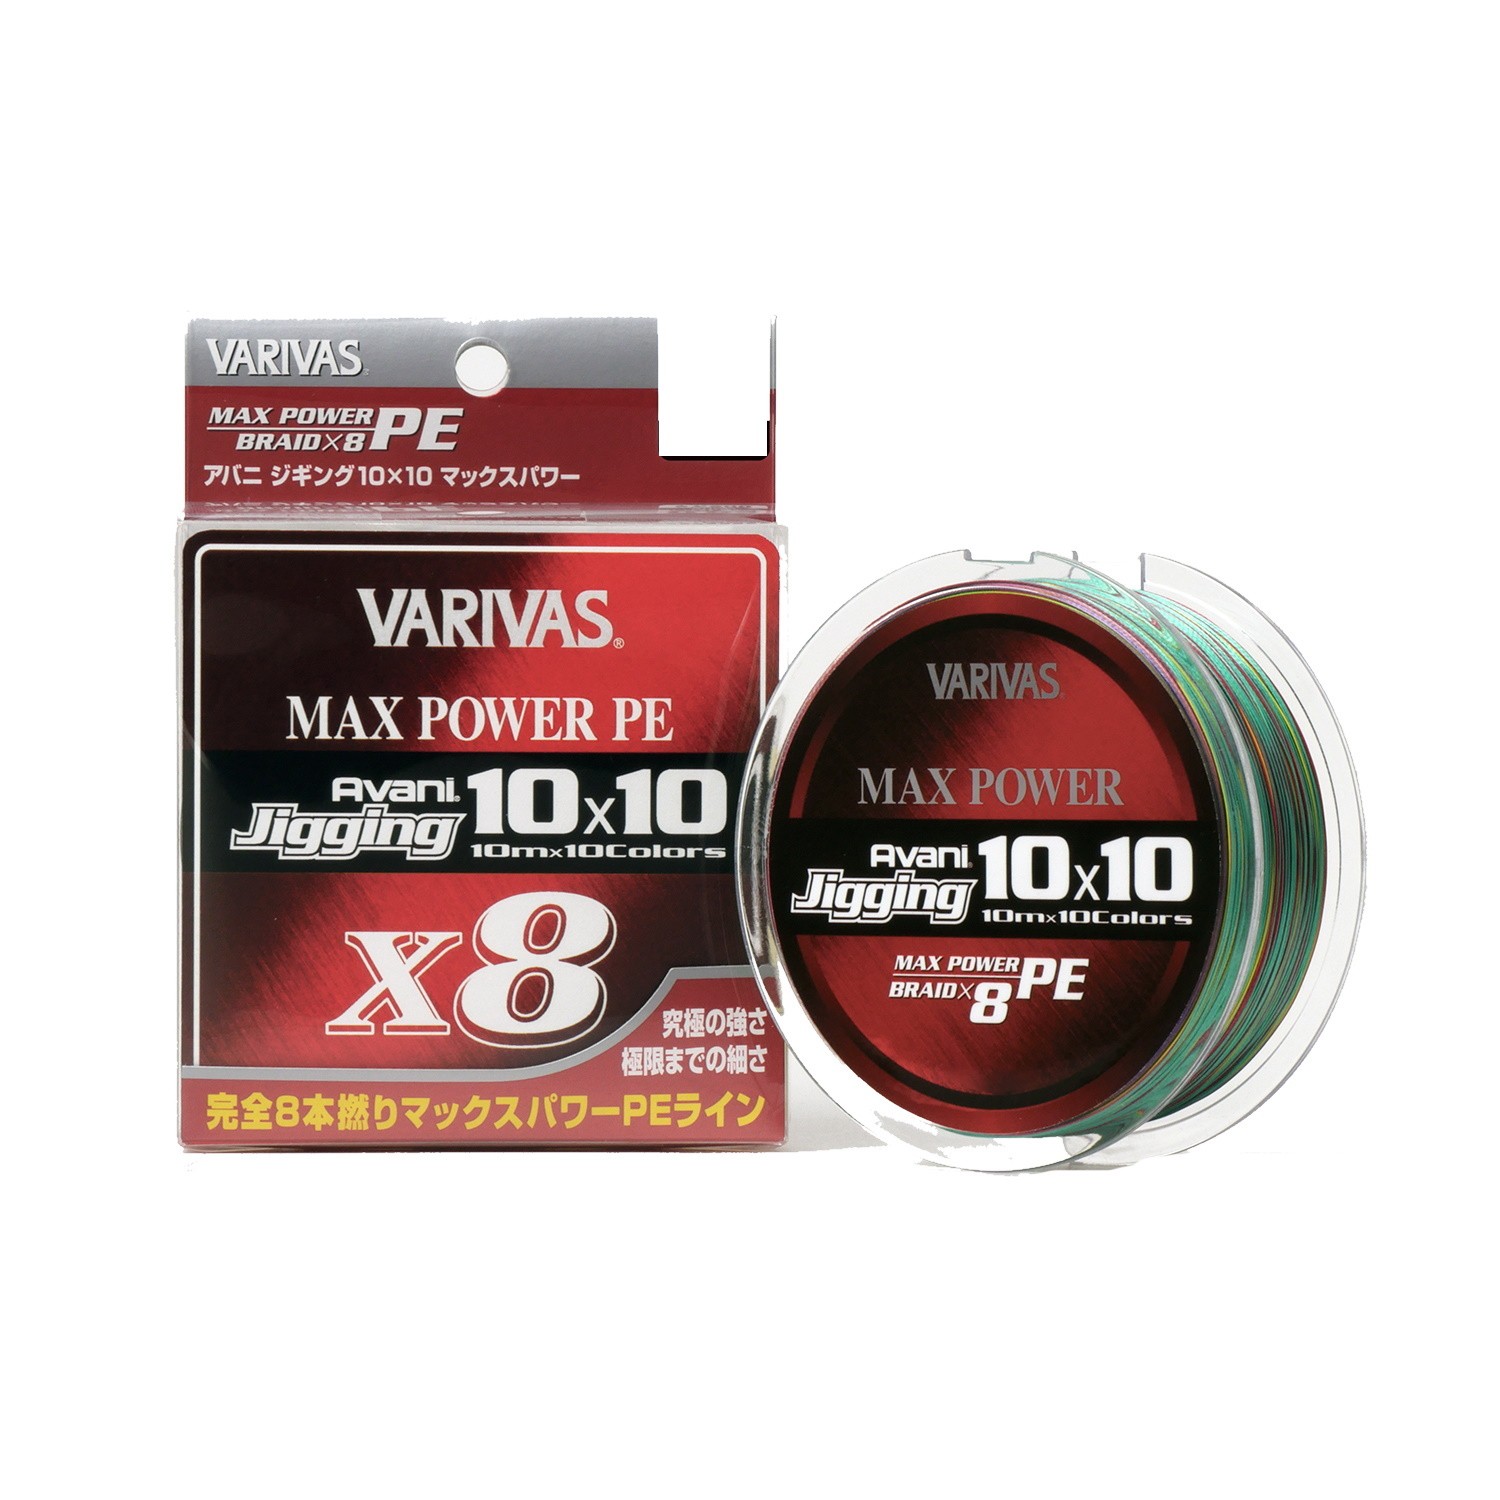 Шнур Varivas Avani Jigging 10x10 Max Power PE X8 200м PE 1.0 - фото 1